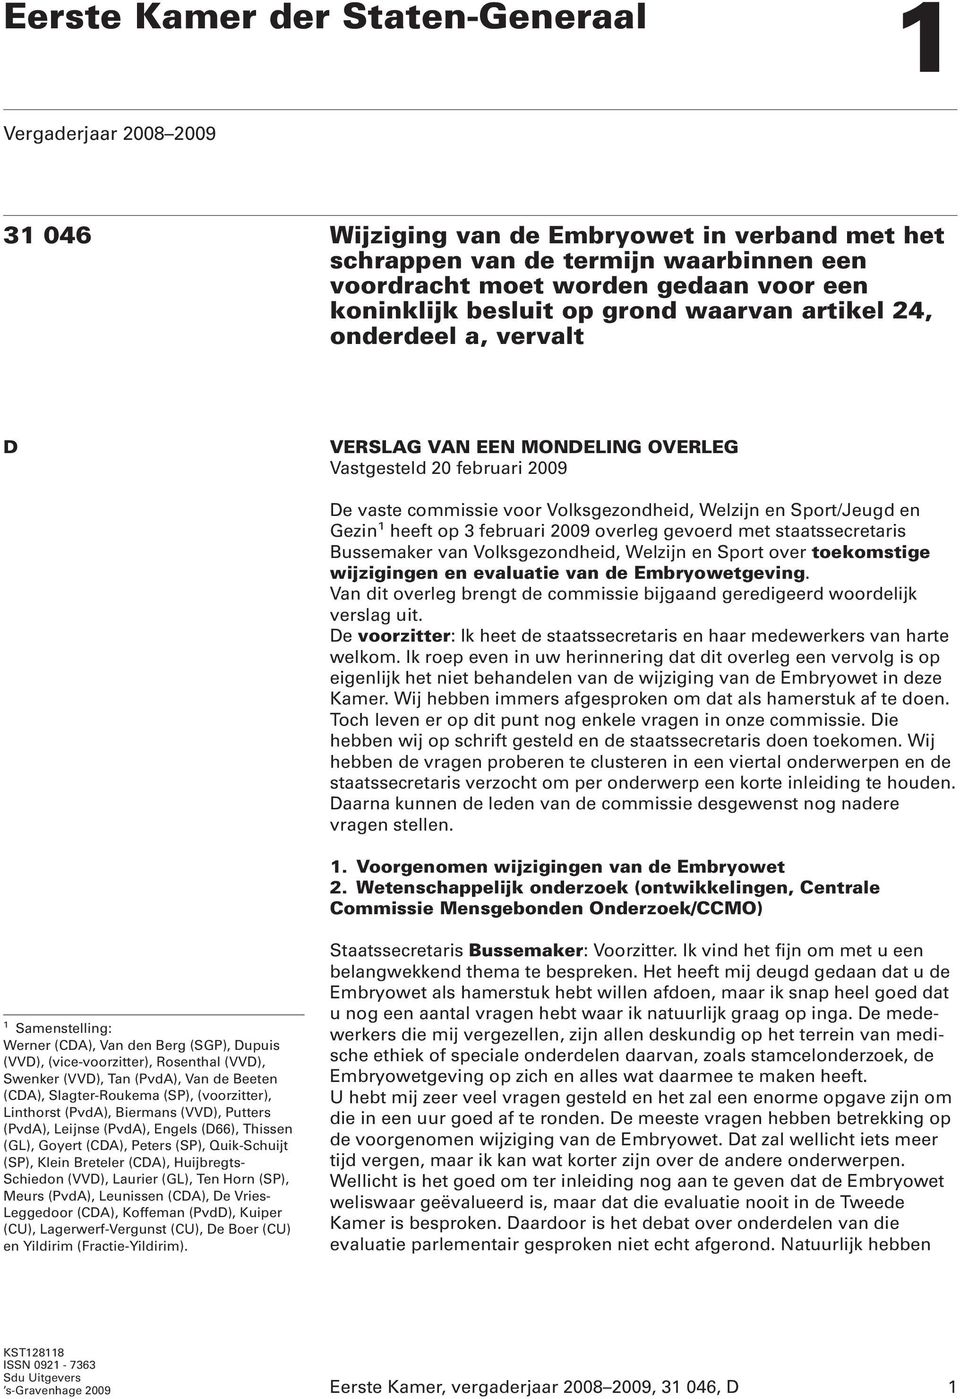 en Gezin 1 heeft op 3 februari 2009 overleg gevoerd met staatssecretaris Bussemaker van Volksgezondheid, Welzijn en Sport over toekomstige wijzigingen en evaluatie van de Embryowetgeving.